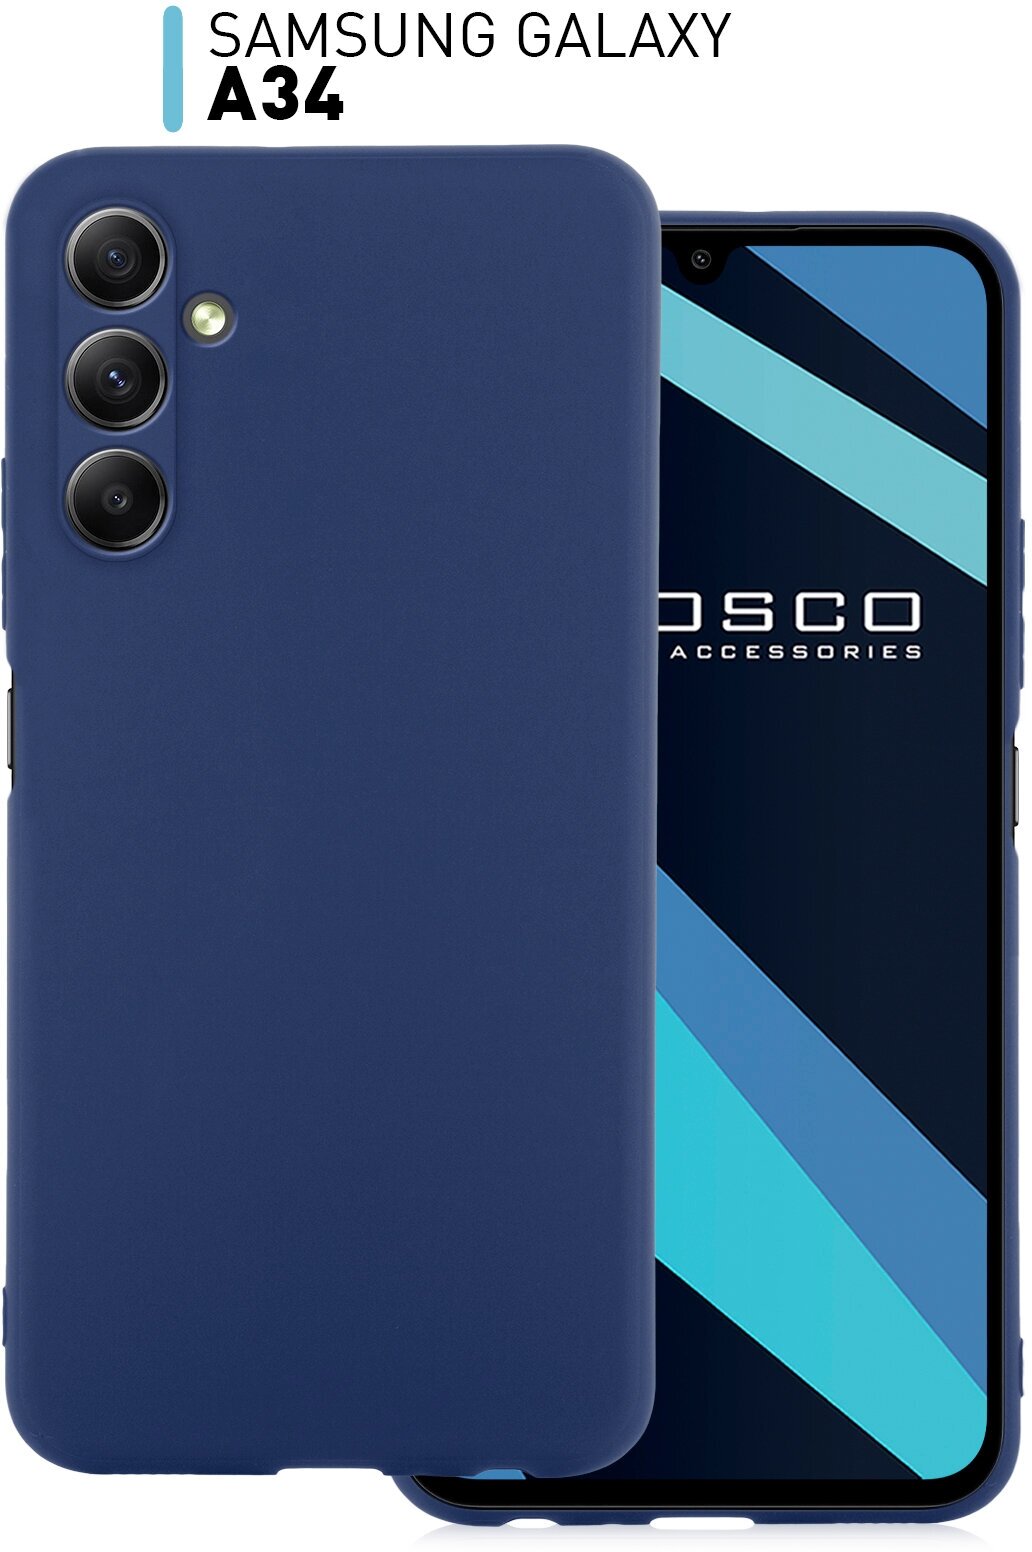 Чехол ROSCO для Samsung Galaxy A34 (Самсунг Галакси А34), силиконовый чехол, тонкий, матовое SOFT-TOUCH покрытие, бортик (защита) модуля камер, синий